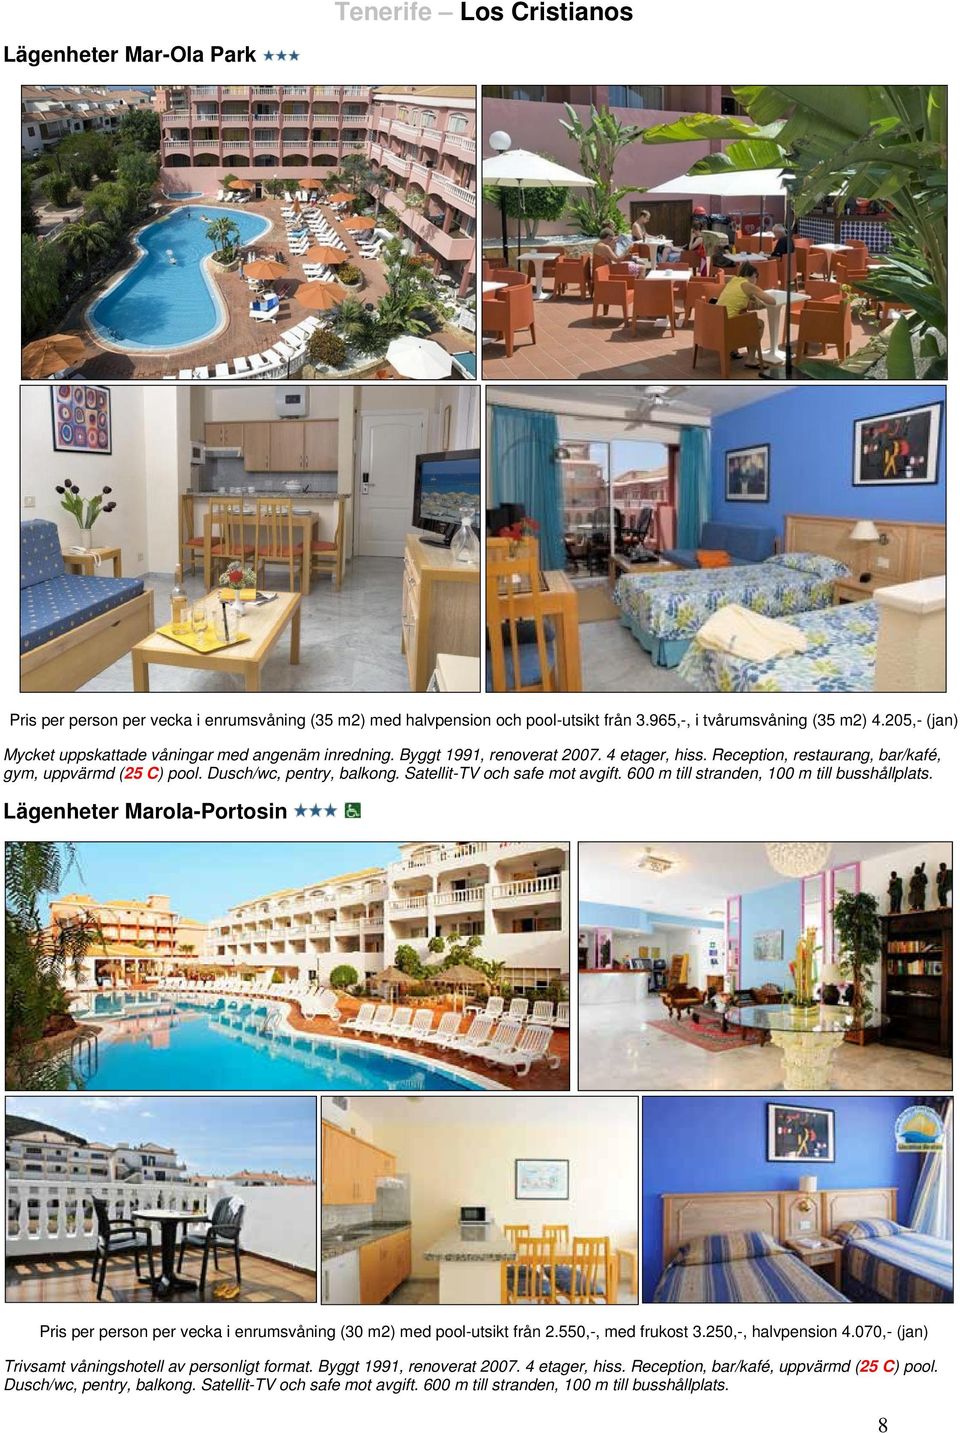 Satellit-TV och safe mot avgift. 600 m till stranden, 100 m till busshållplats. Lägenheter Marola-Portosin Pris per person per vecka i enrumsvåning (30 m2) med pool-utsikt från 2.550,-, med frukost 3.